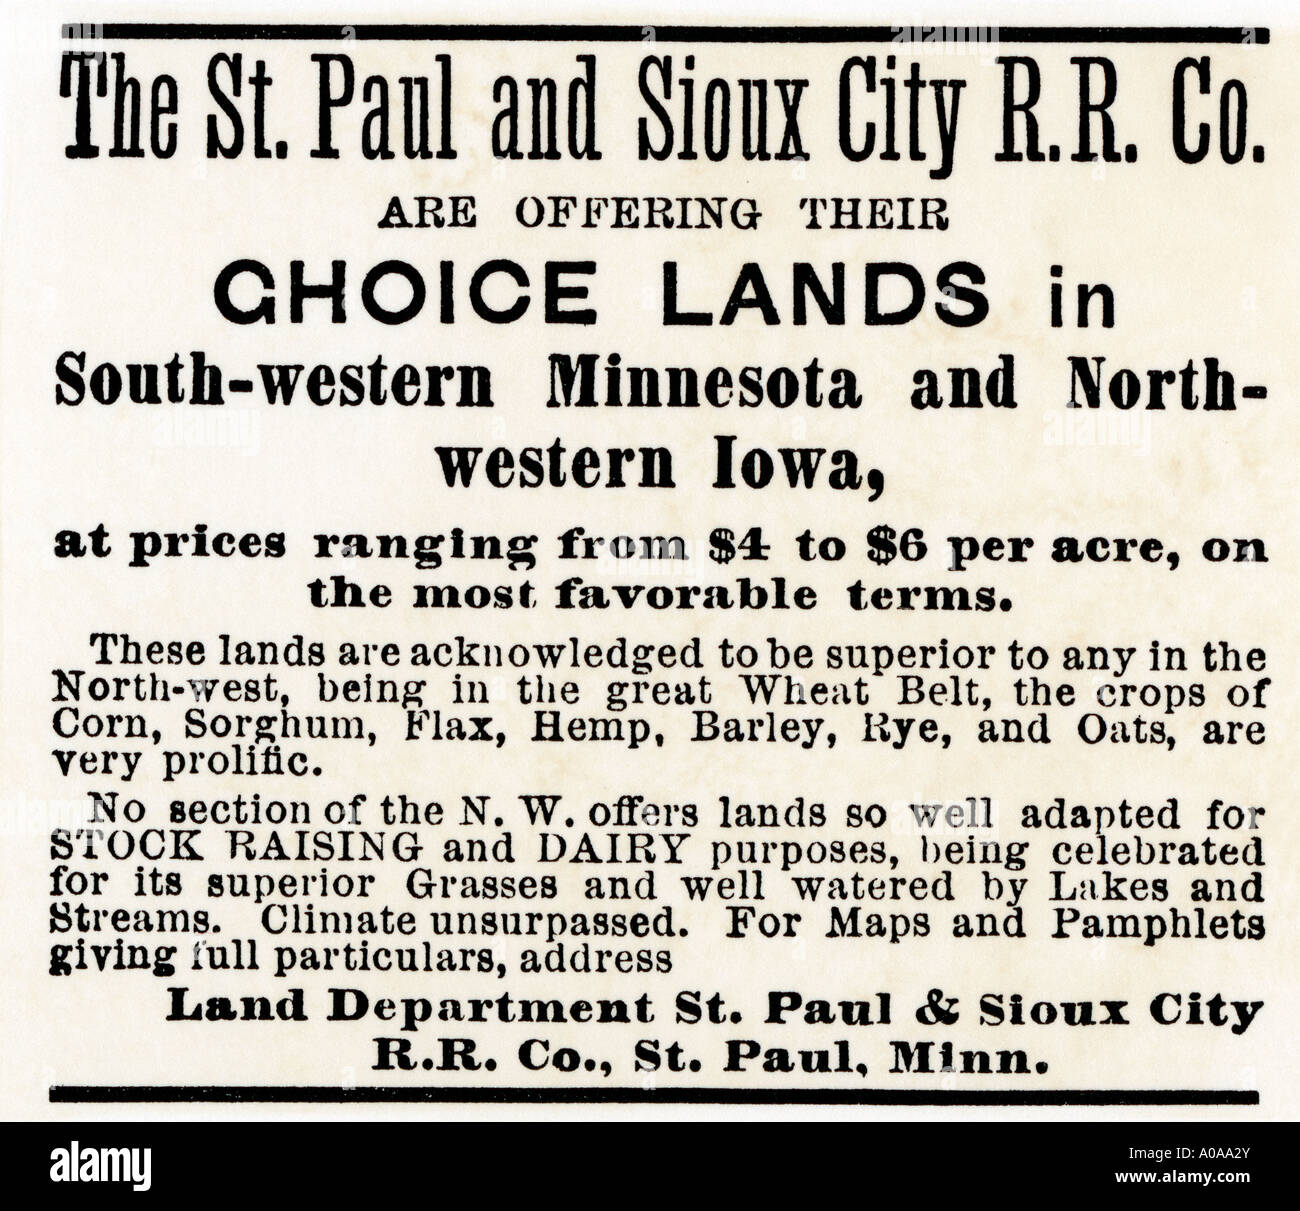 La terre dans le Minnesota et l'Iowa annoncés par le St Paul Sioux City Railroad Company 1870. Gravure sur bois avec un lavage à l'aquarelle Banque D'Images